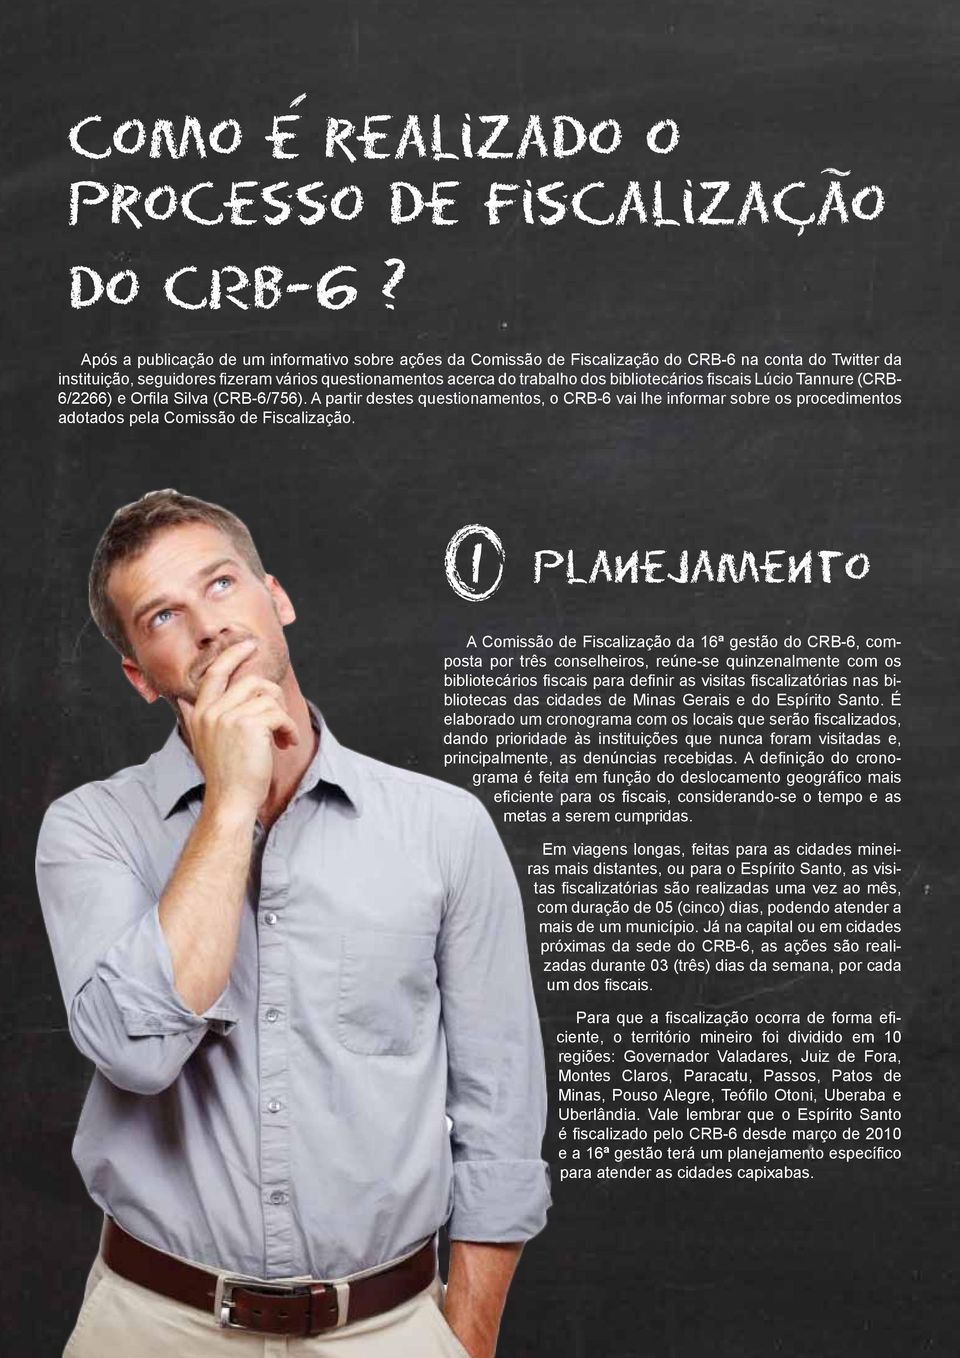 bibliotecários fiscais Lúcio Tannure (CRB- 6/2266) e Orfila Silva (CRB-6/756). A partir destes questionamentos, o CRB-6 vai lhe informar sobre os procedimentos adotados pela Comissão de Fiscalização.